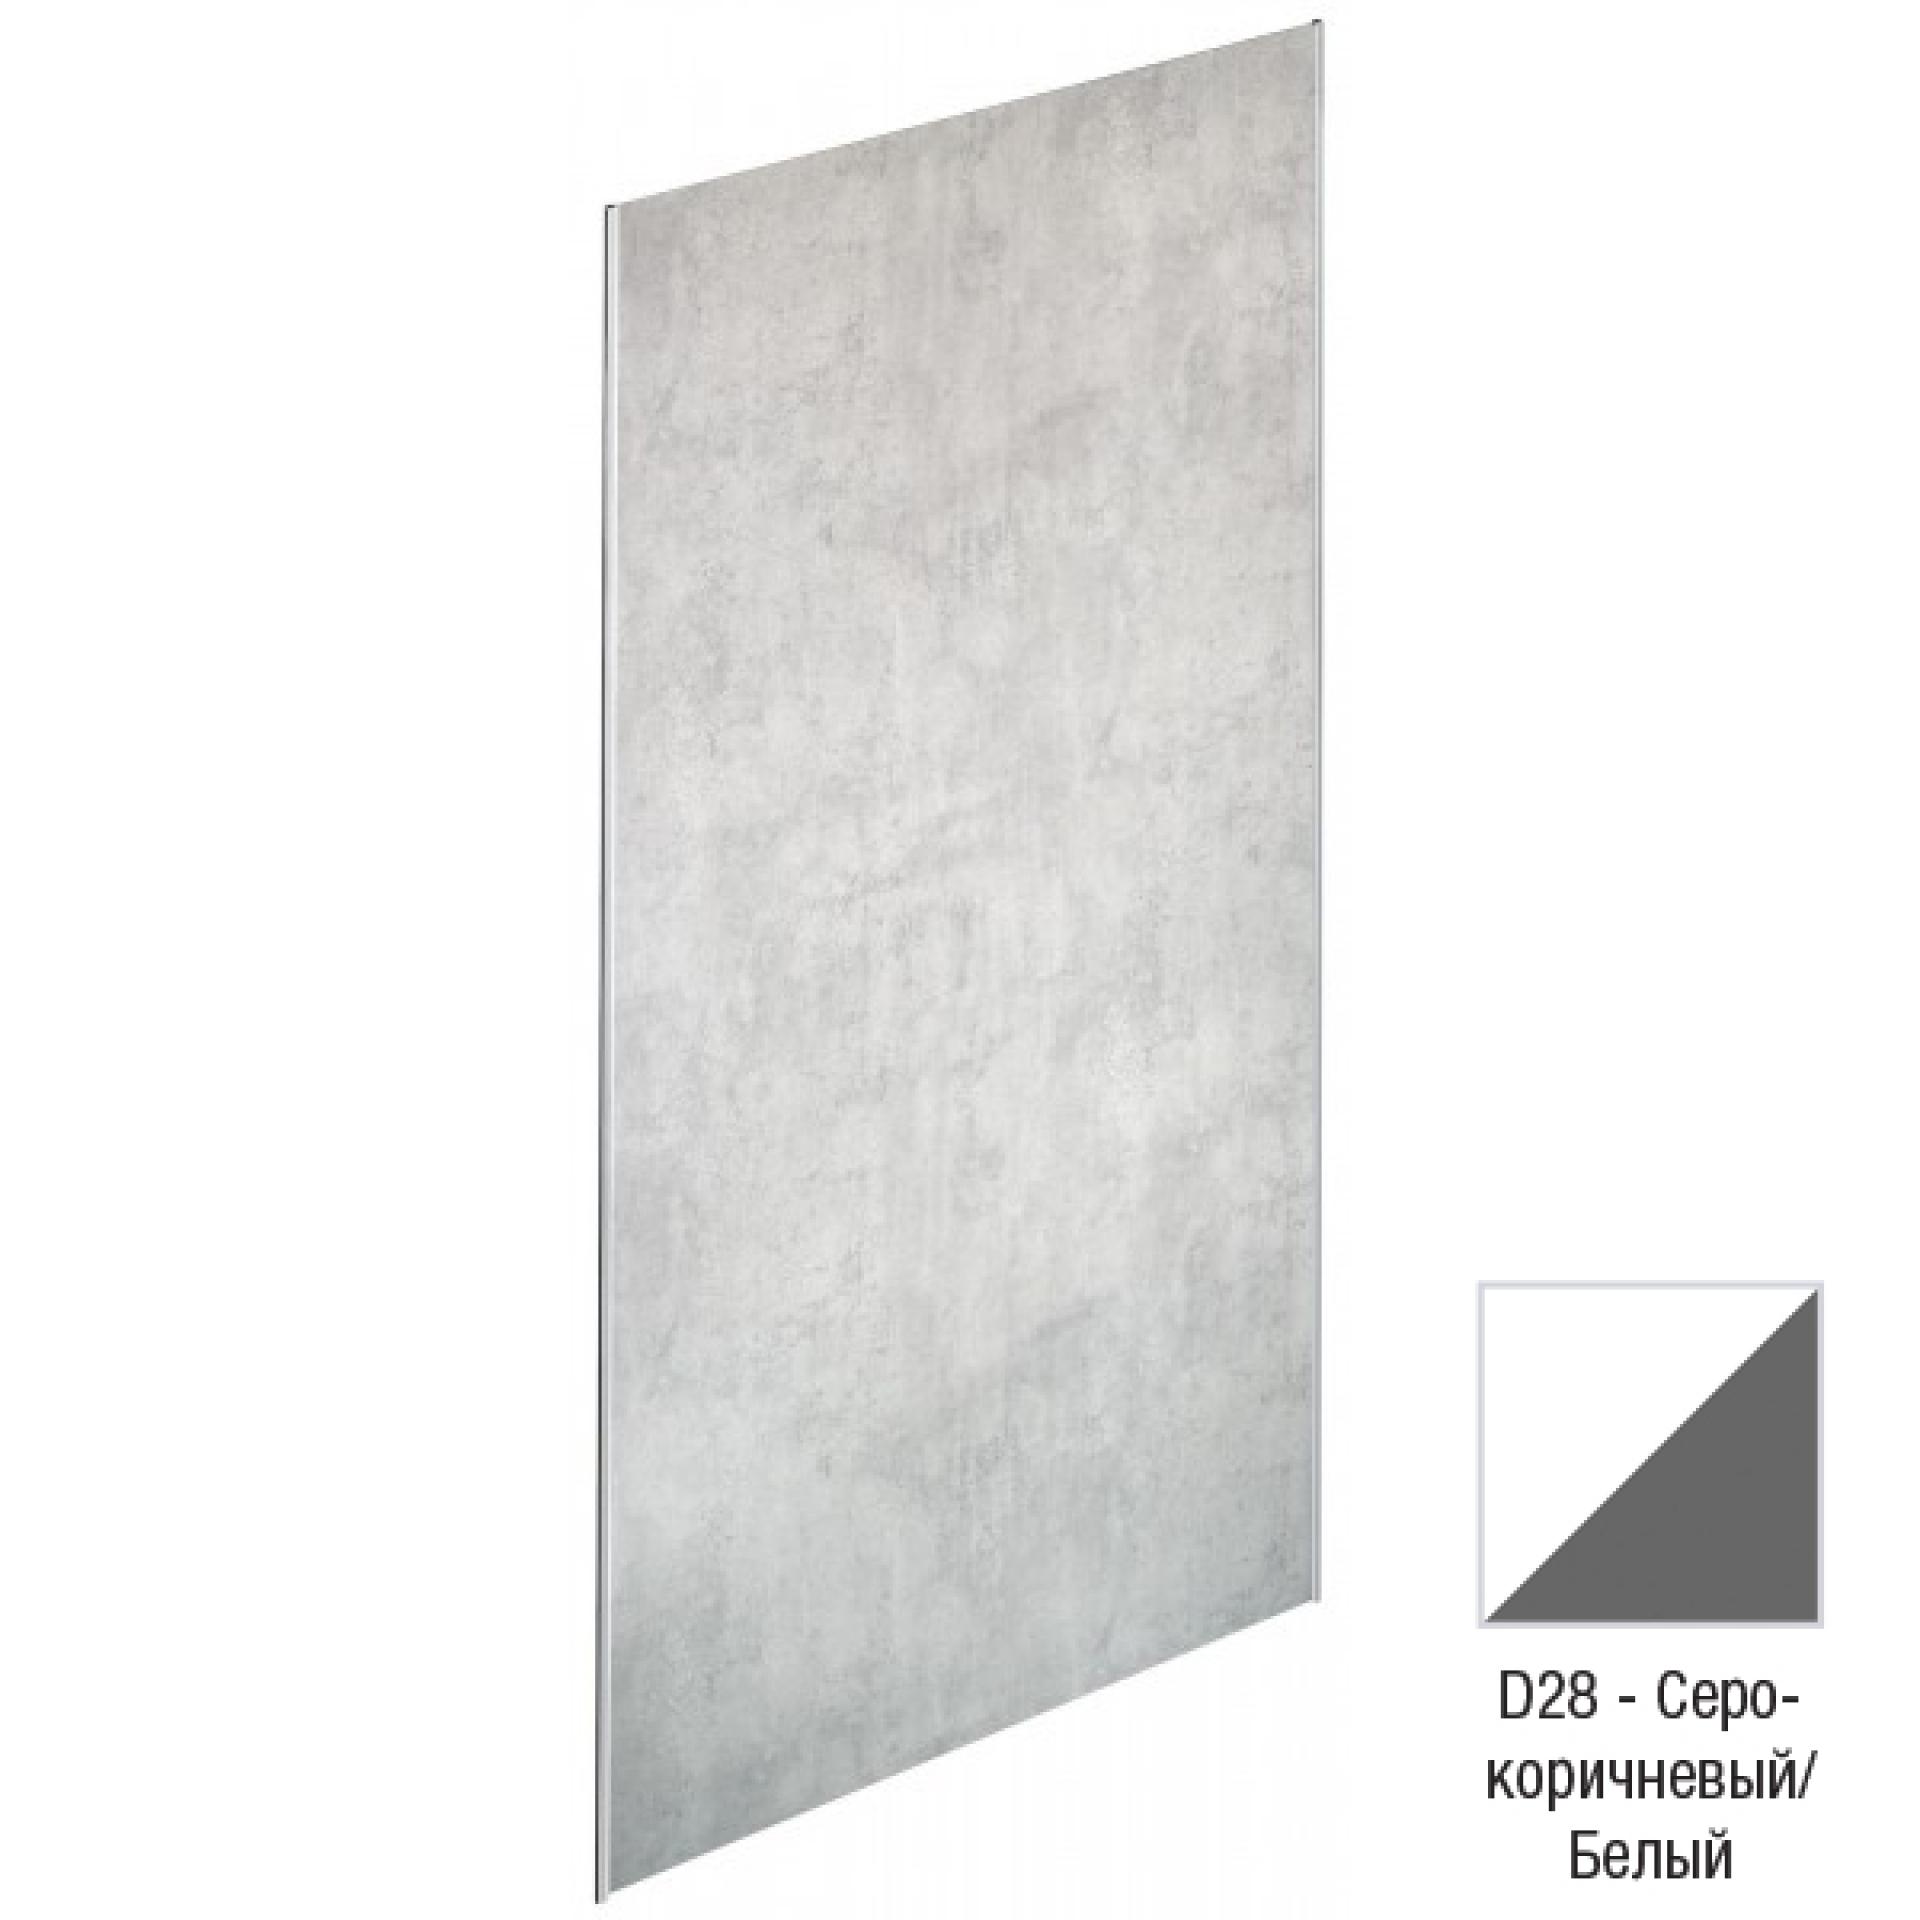 Декоративная панель для душевого пространства Jacob Delafon Panolux E63030-D28,  серо-коричневый/белый